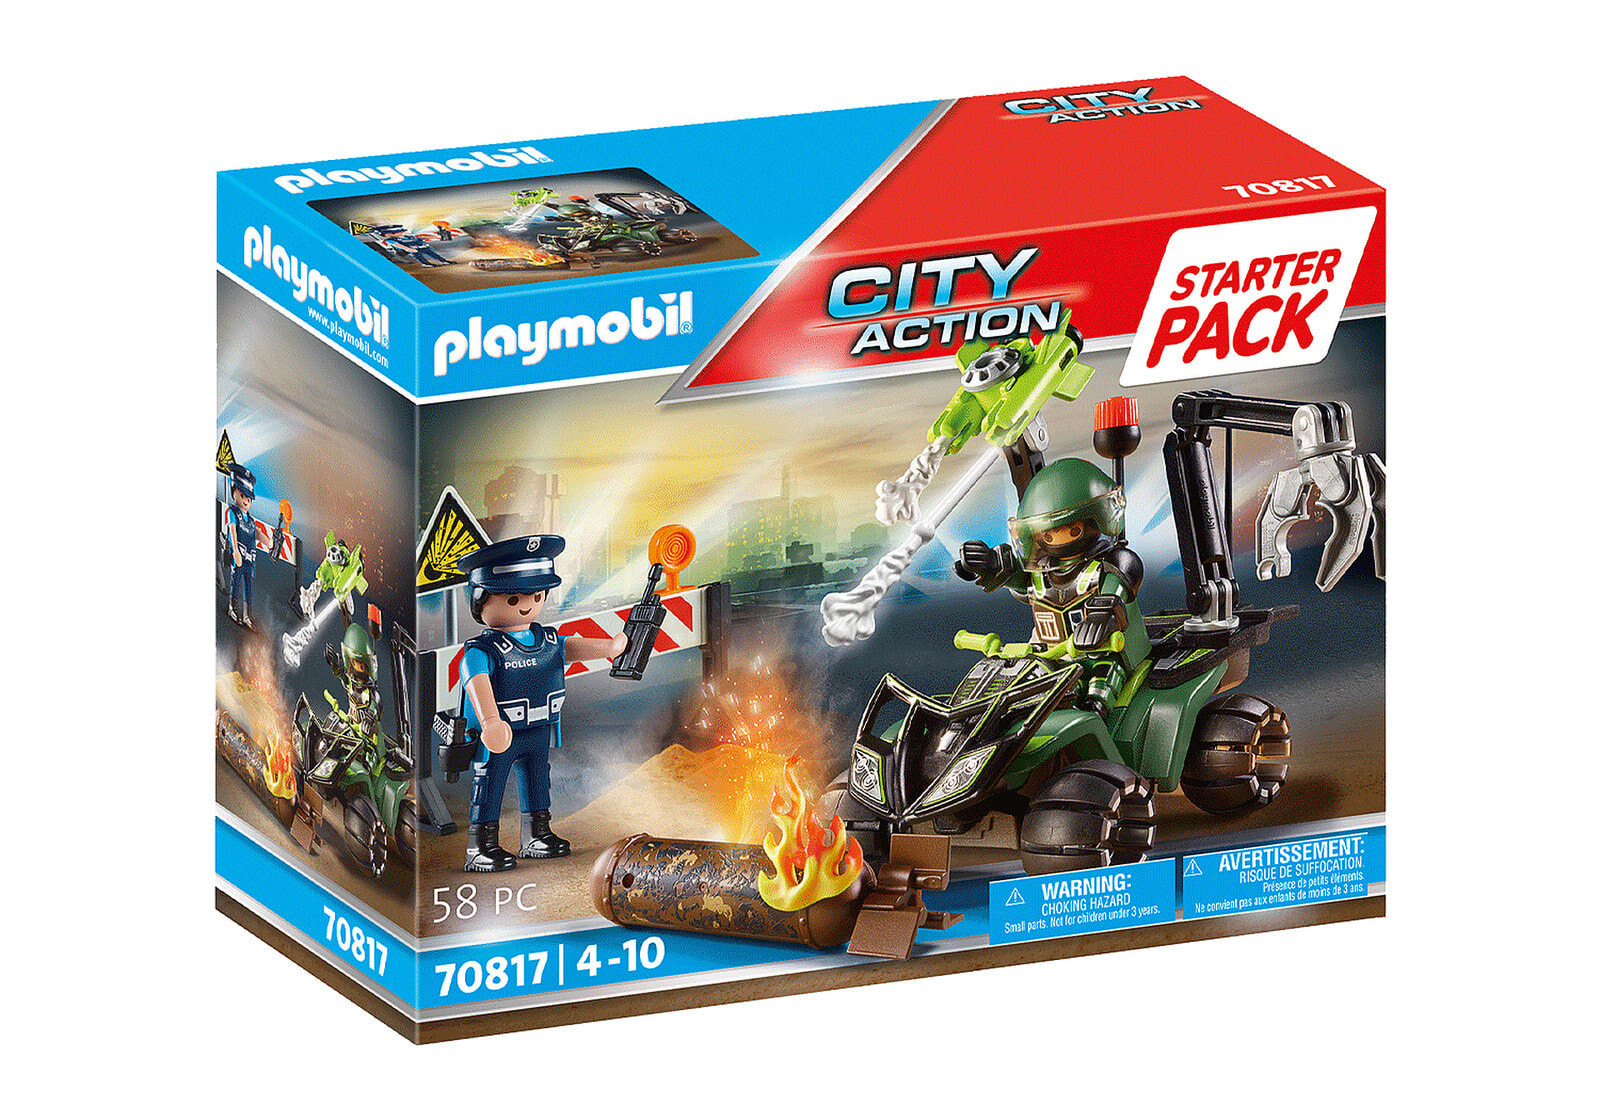 Детский игровой набор и фигурка из дерева Playmobil City Action 70817, Police, Boy, 4 yr(s), Multicolour, Plastic